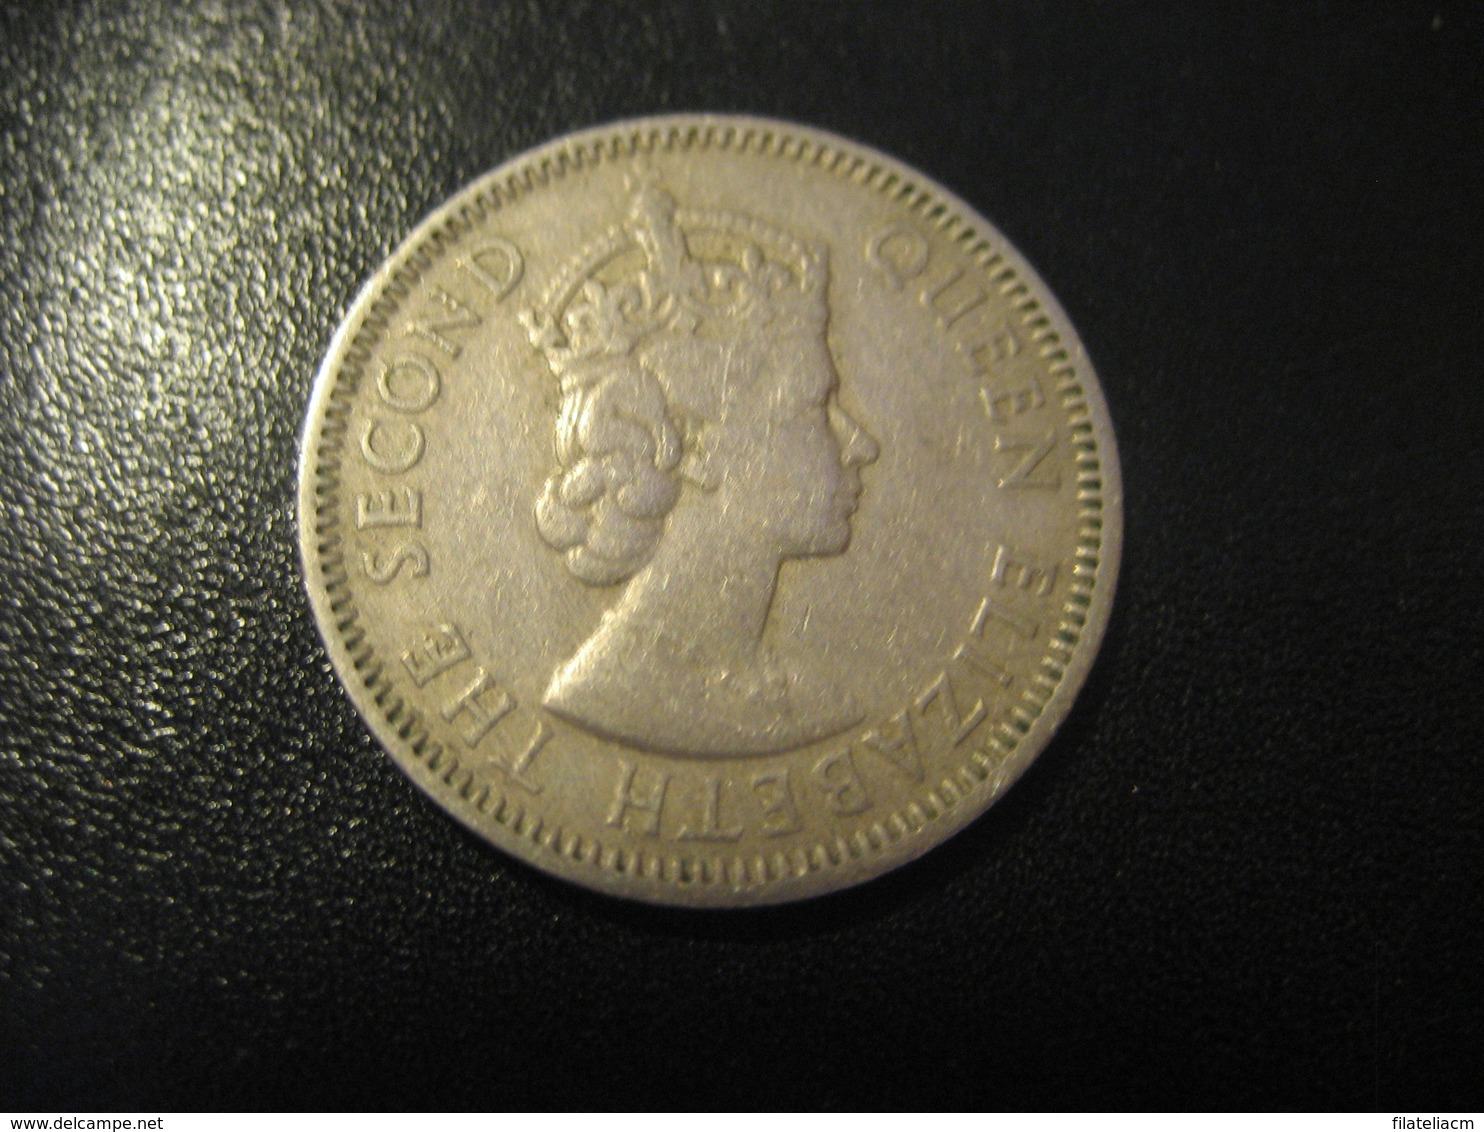 25 Cents BRITISH CARIBBEAN TERRITORIES 1955 Coin British West Indies Antillas - West Indies